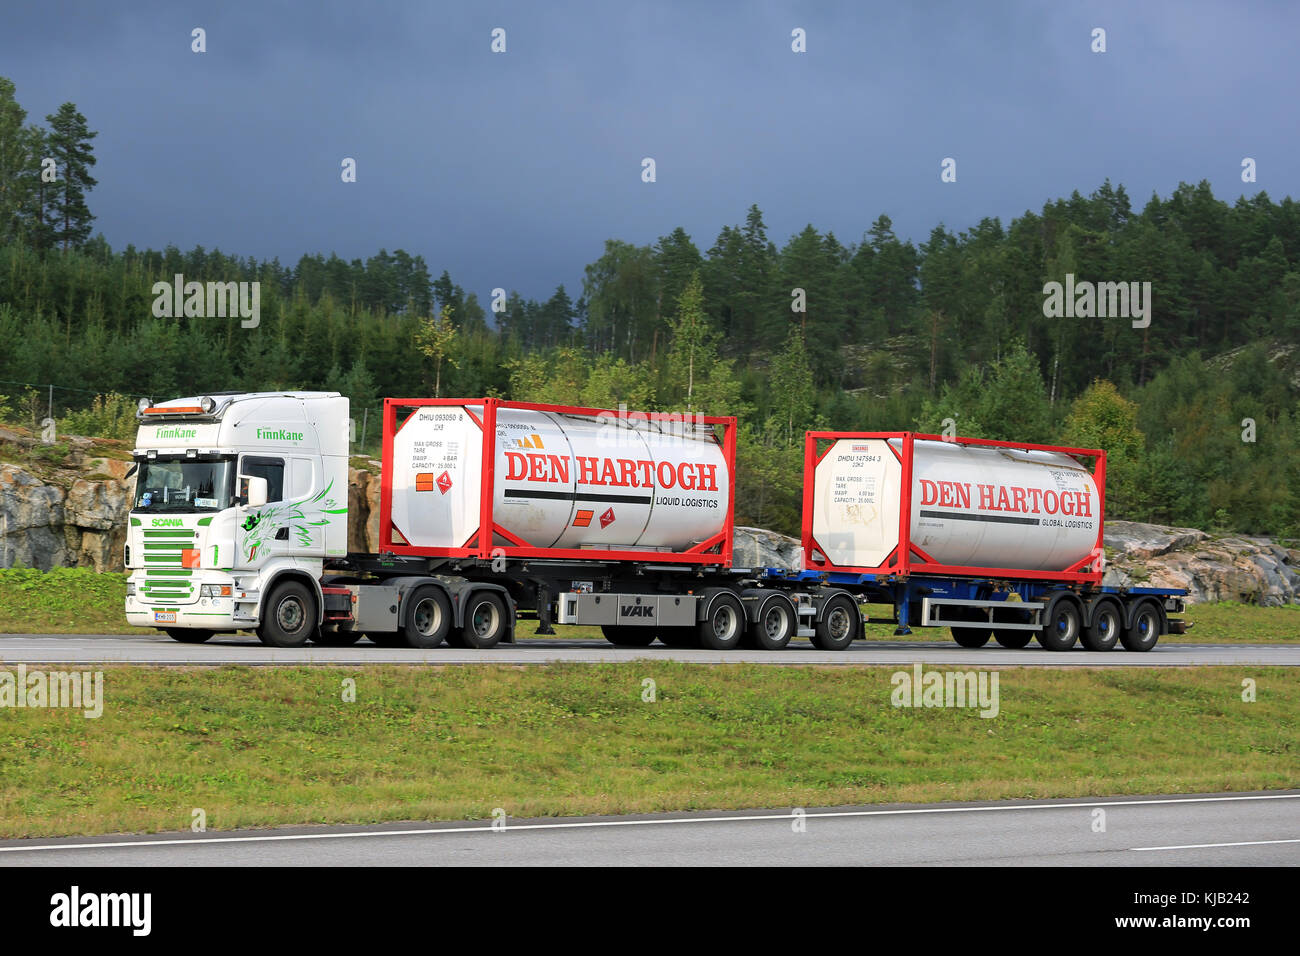 Paimio, Finlandia - 26 agosto 2016 : Scania R500 del team finnkane oy trasporta due den hartogh contenitori di liquido lungo l'autostrada all'estate. Foto Stock